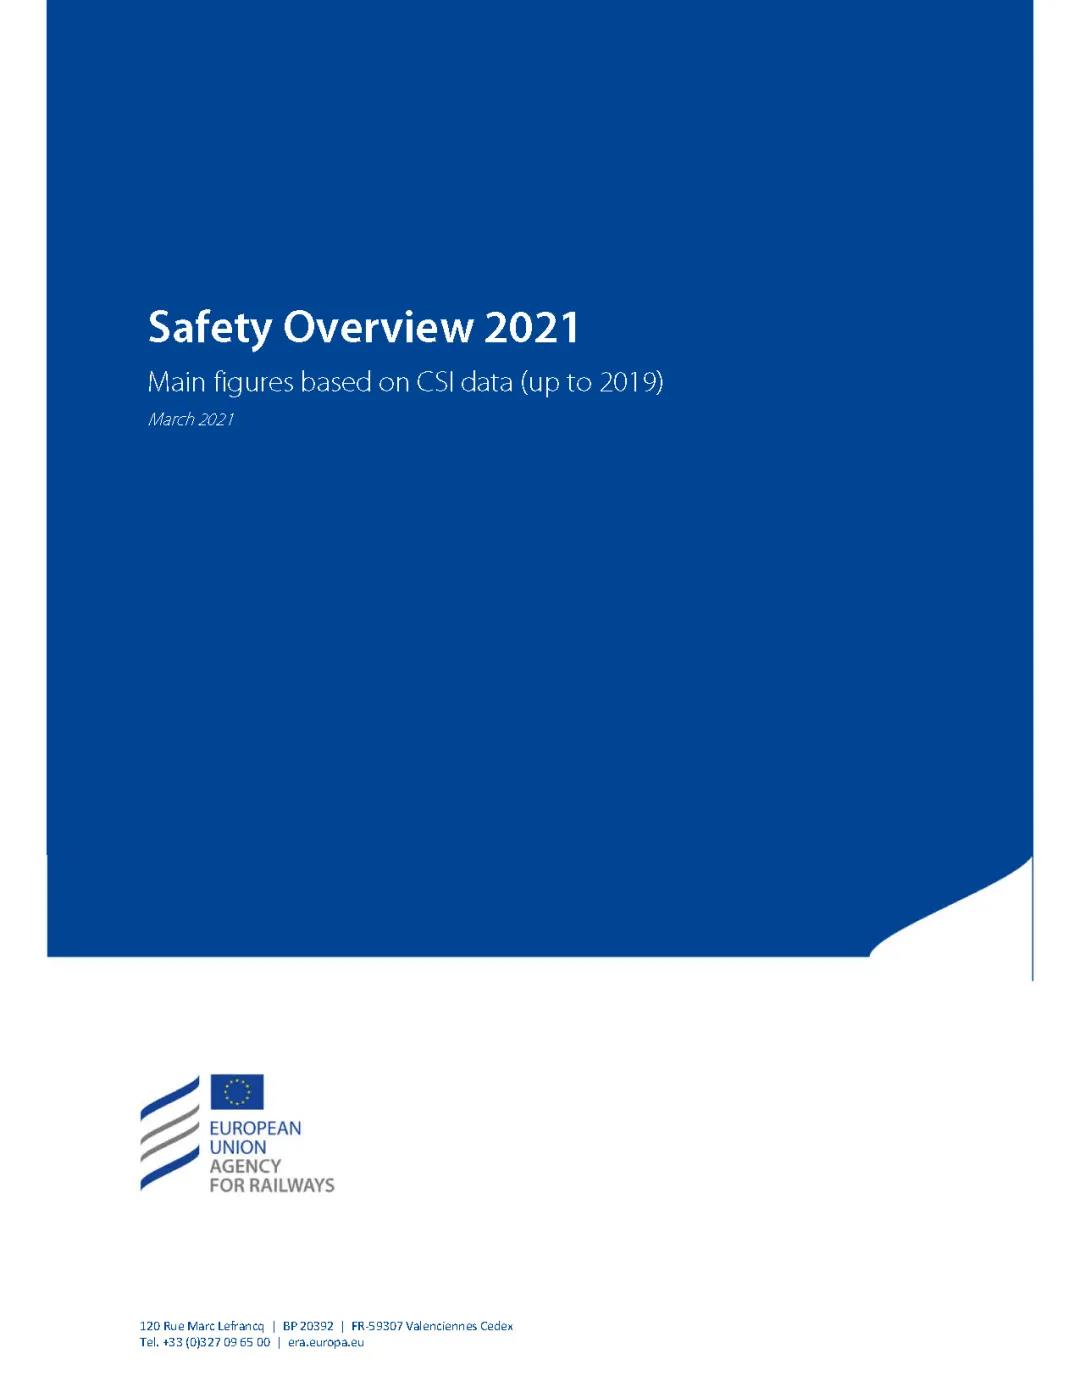 欧盟铁路安全报告 2021